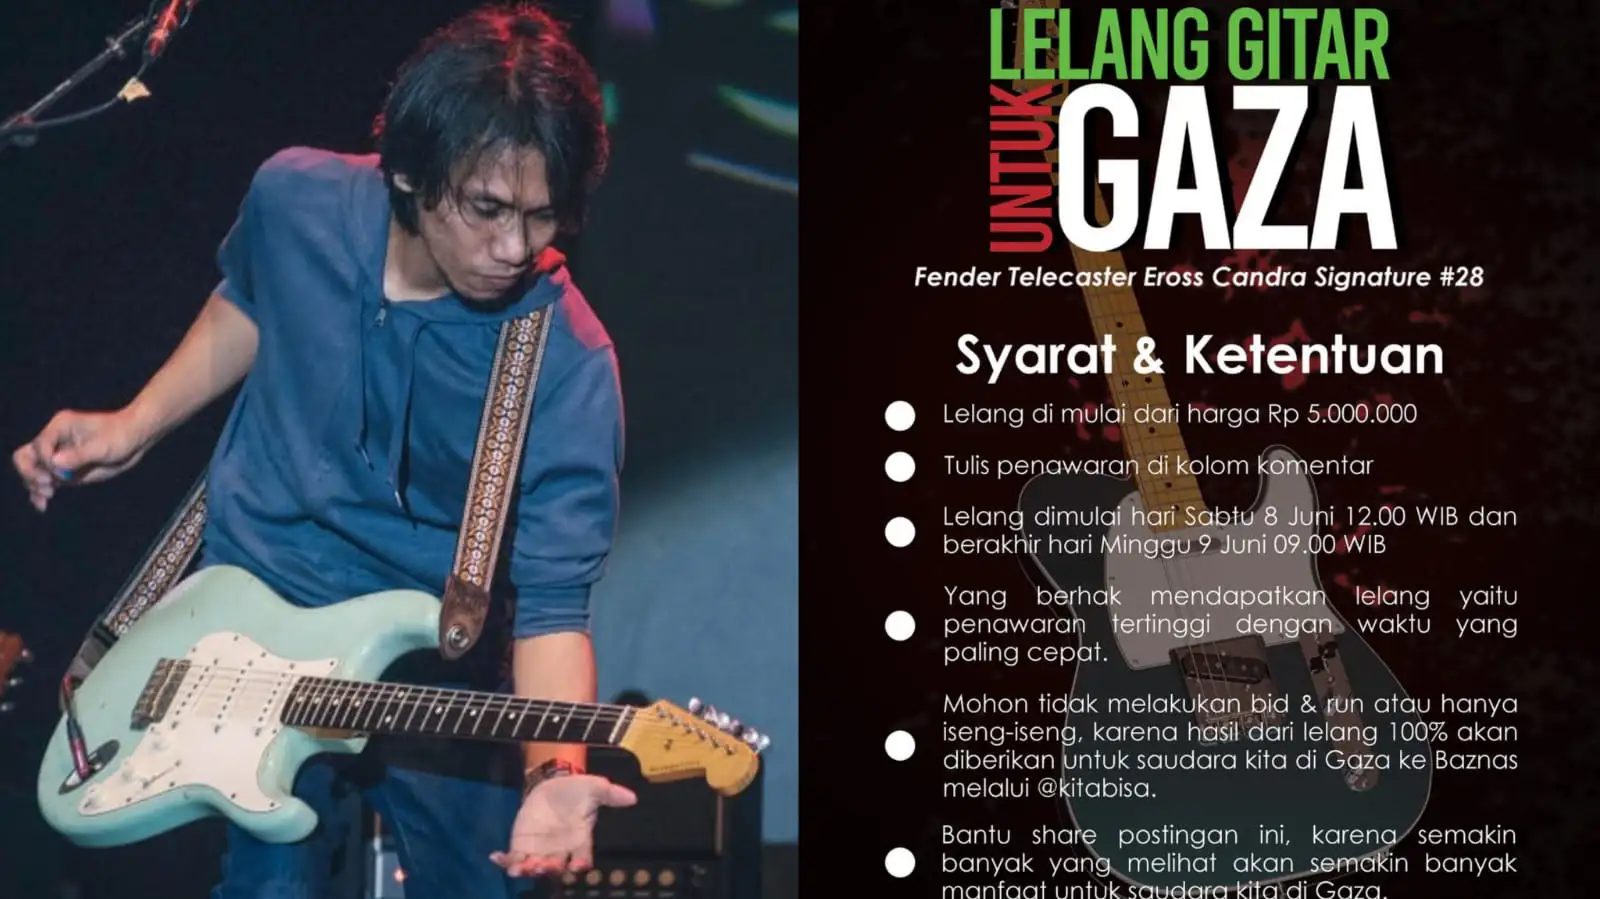 Gitar Fender Telecaster Eross Candra Dilelang Lima Juta Rupiah untuk Palestina, Laku Ratusan Juta